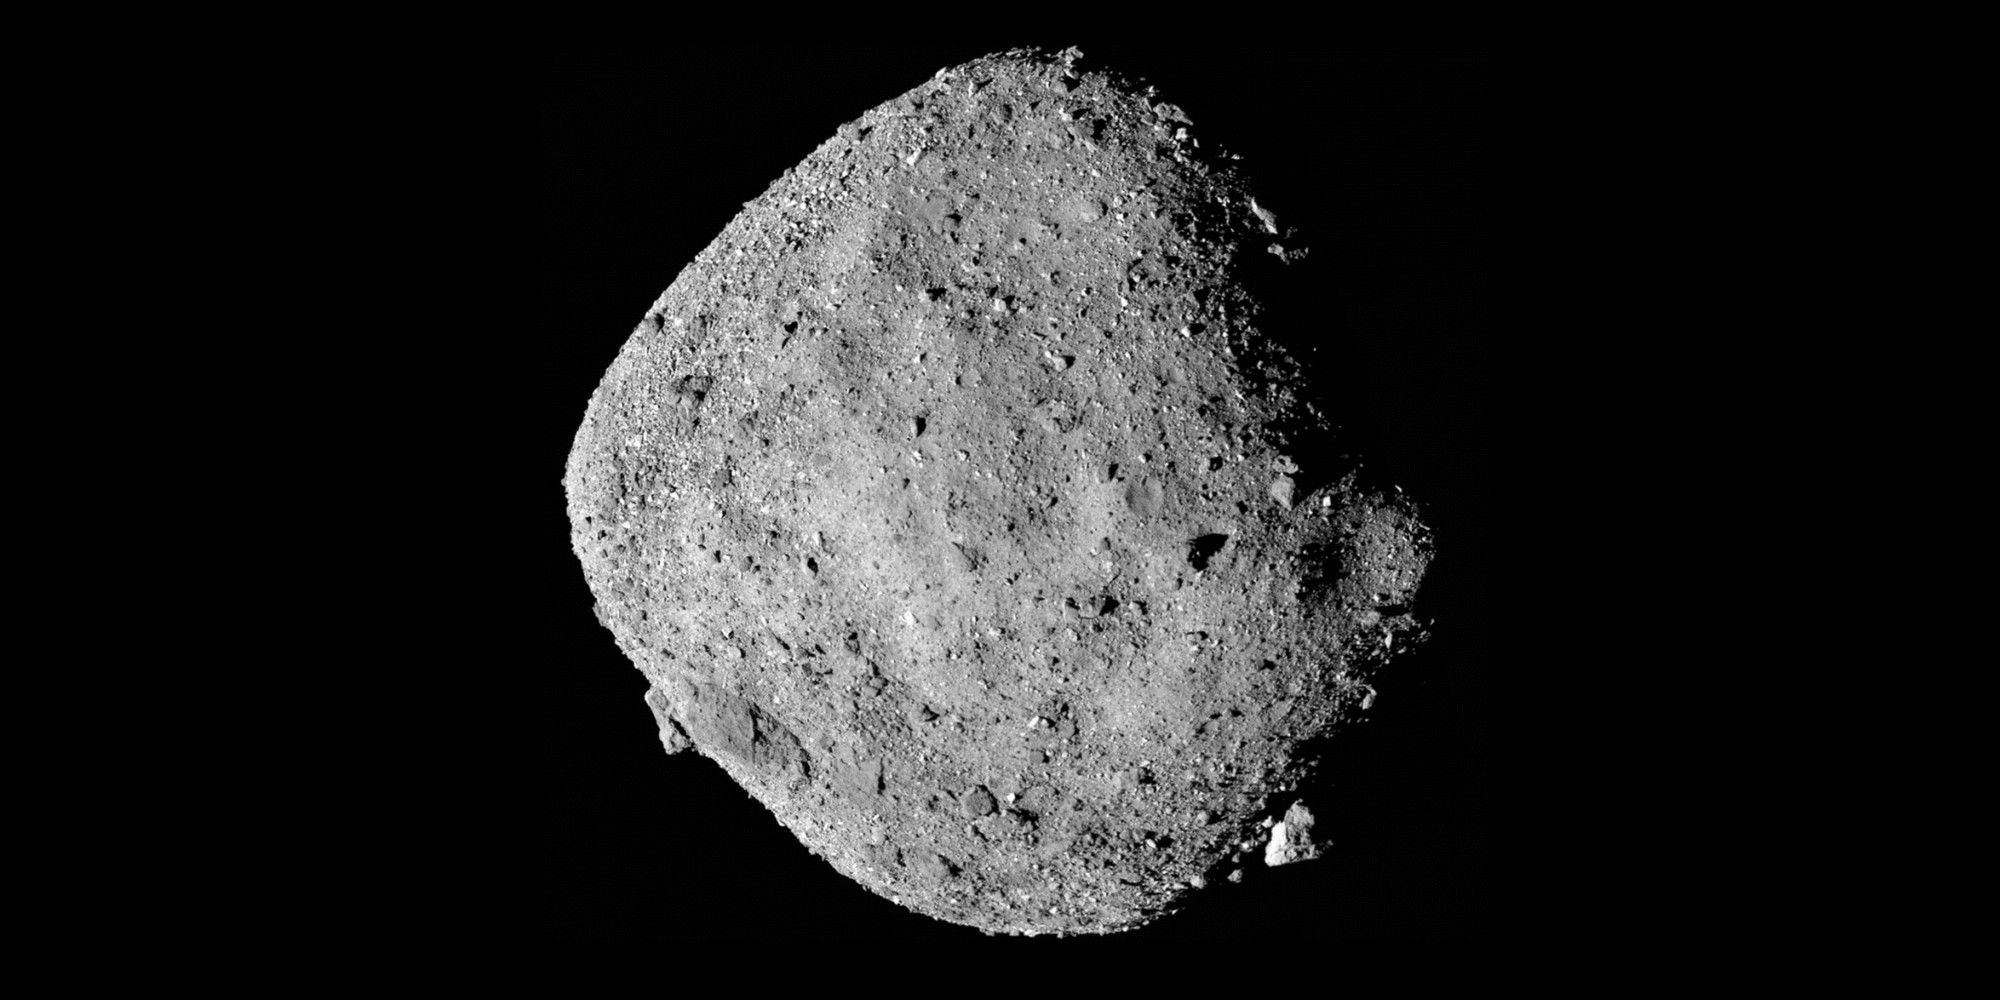 Un asteroide podría chocar con la Tierra en 2182, dice un estudio de la NASA